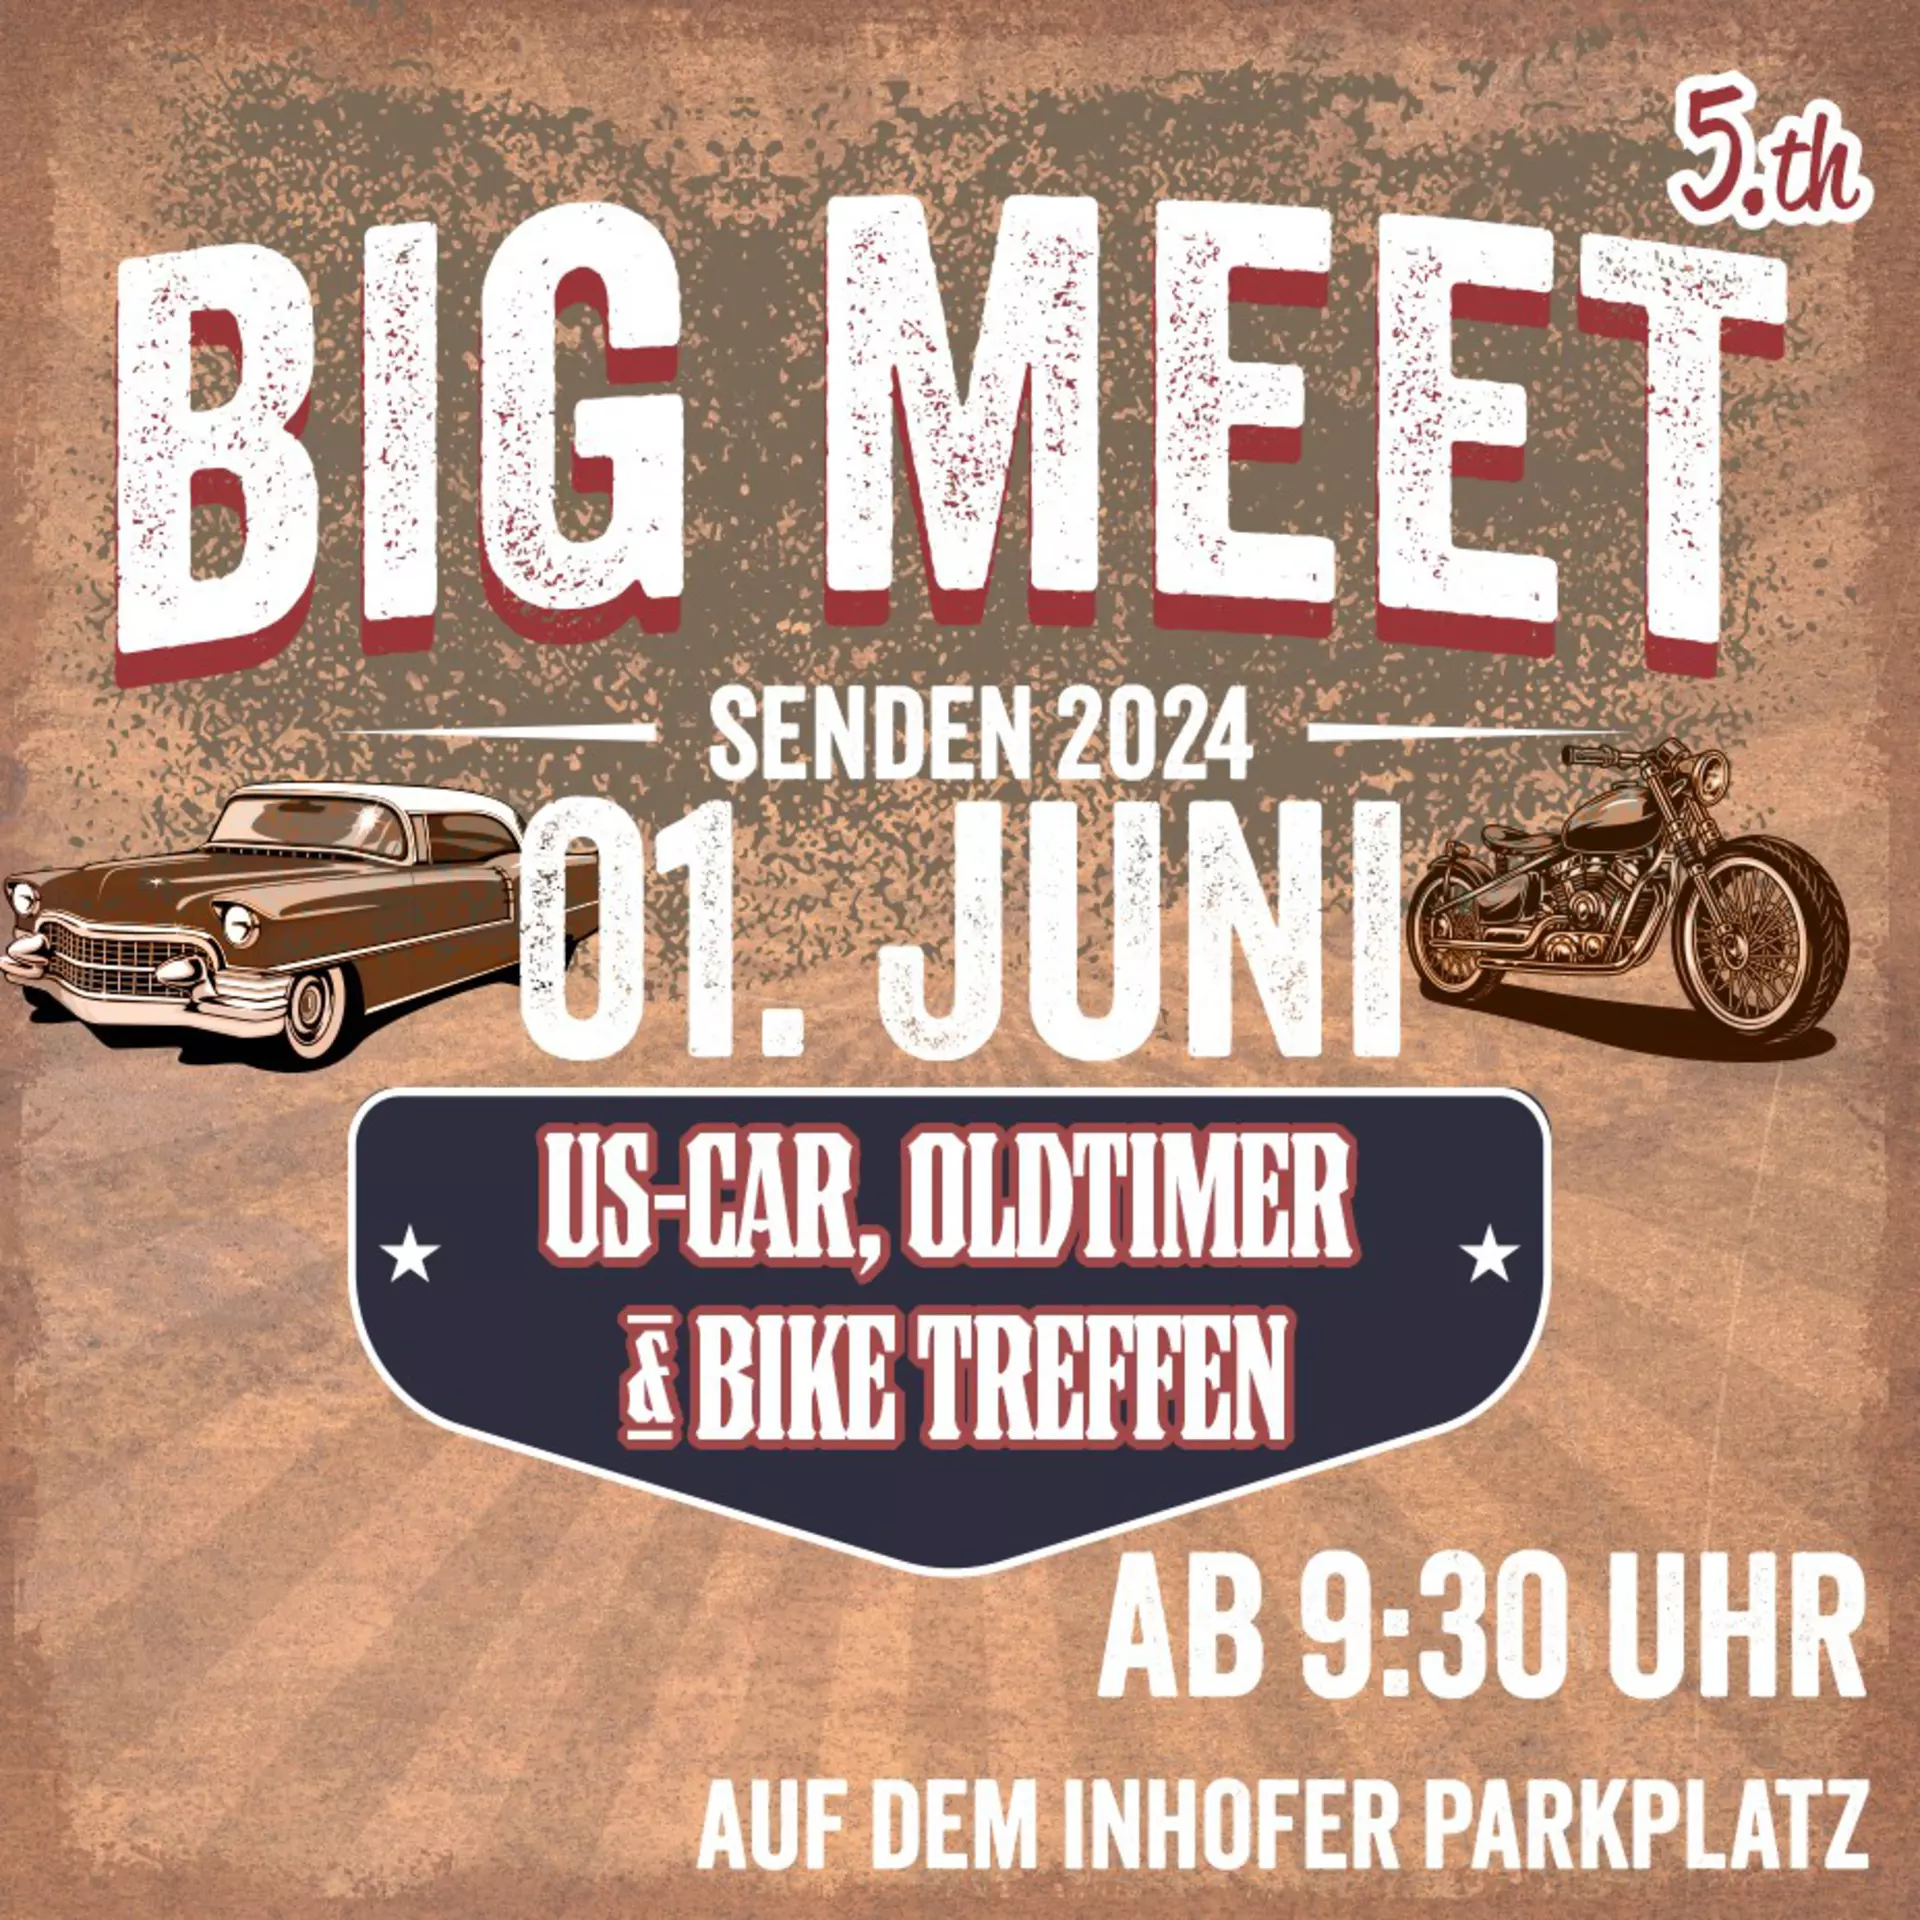 Big Meet bei Möbel Inhofer - großes US Car Treffen am 1. Juni. Kommen Sie vorbei!